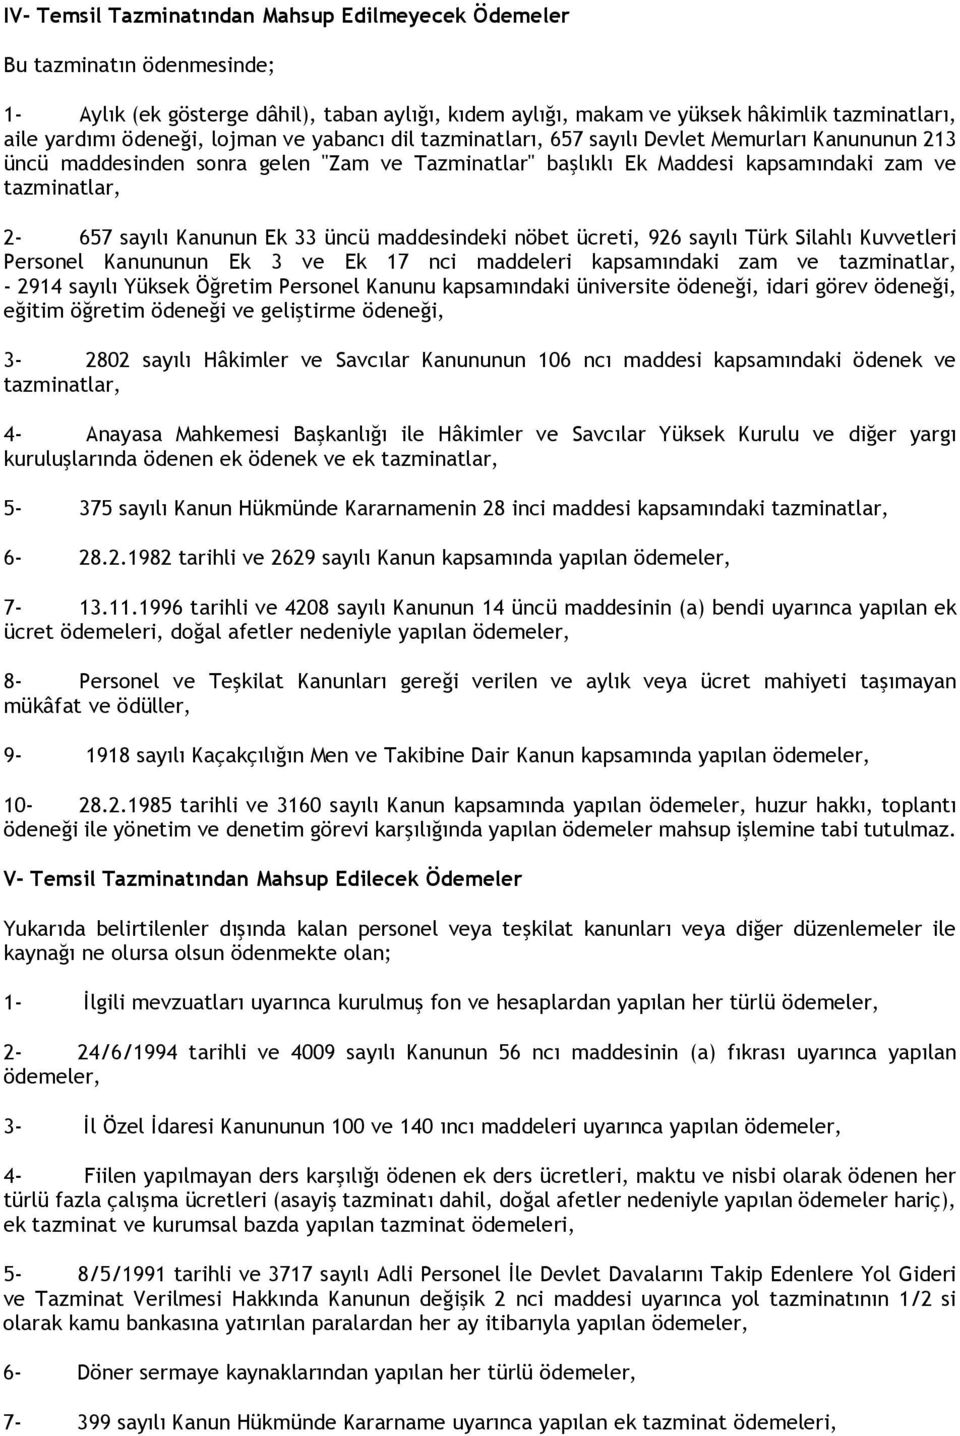 Kanunun Ek 33 üncü maddesindeki nöbet ücreti, 926 sayılı Türk Silahlı Kuvvetleri Personel Kanununun Ek 3 ve Ek 17 nci maddeleri kapsamındaki zam ve tazminatlar, - 2914 sayılı Yüksek Öğretim Personel